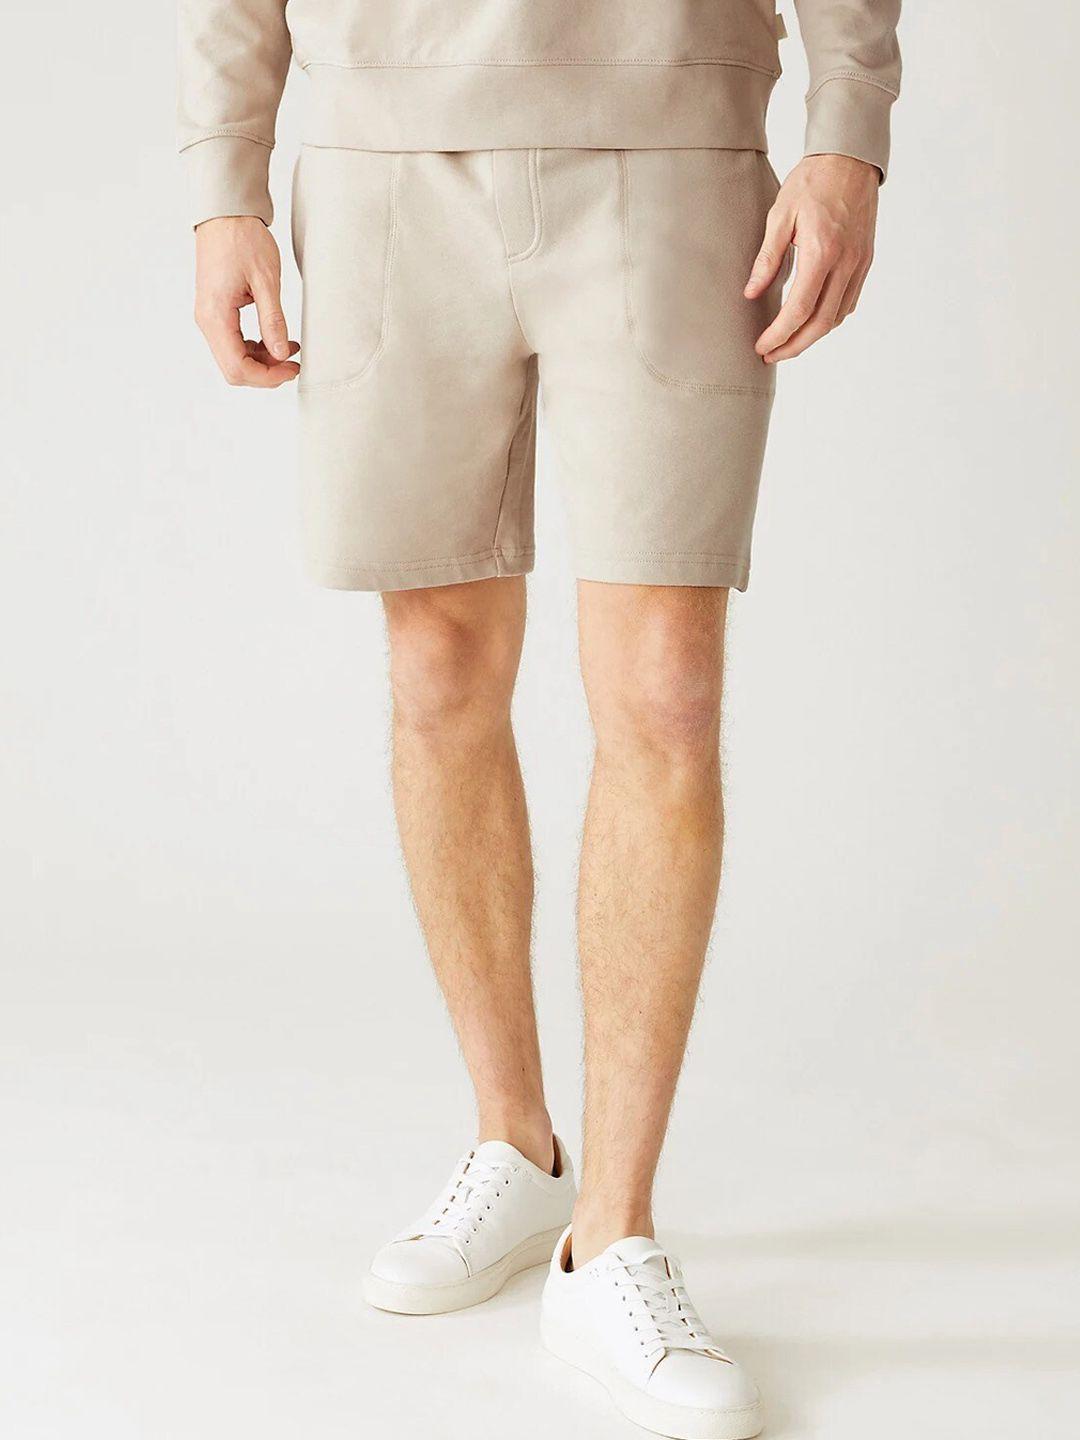 marks-&-spencer-men-mid-rise-regular-shorts